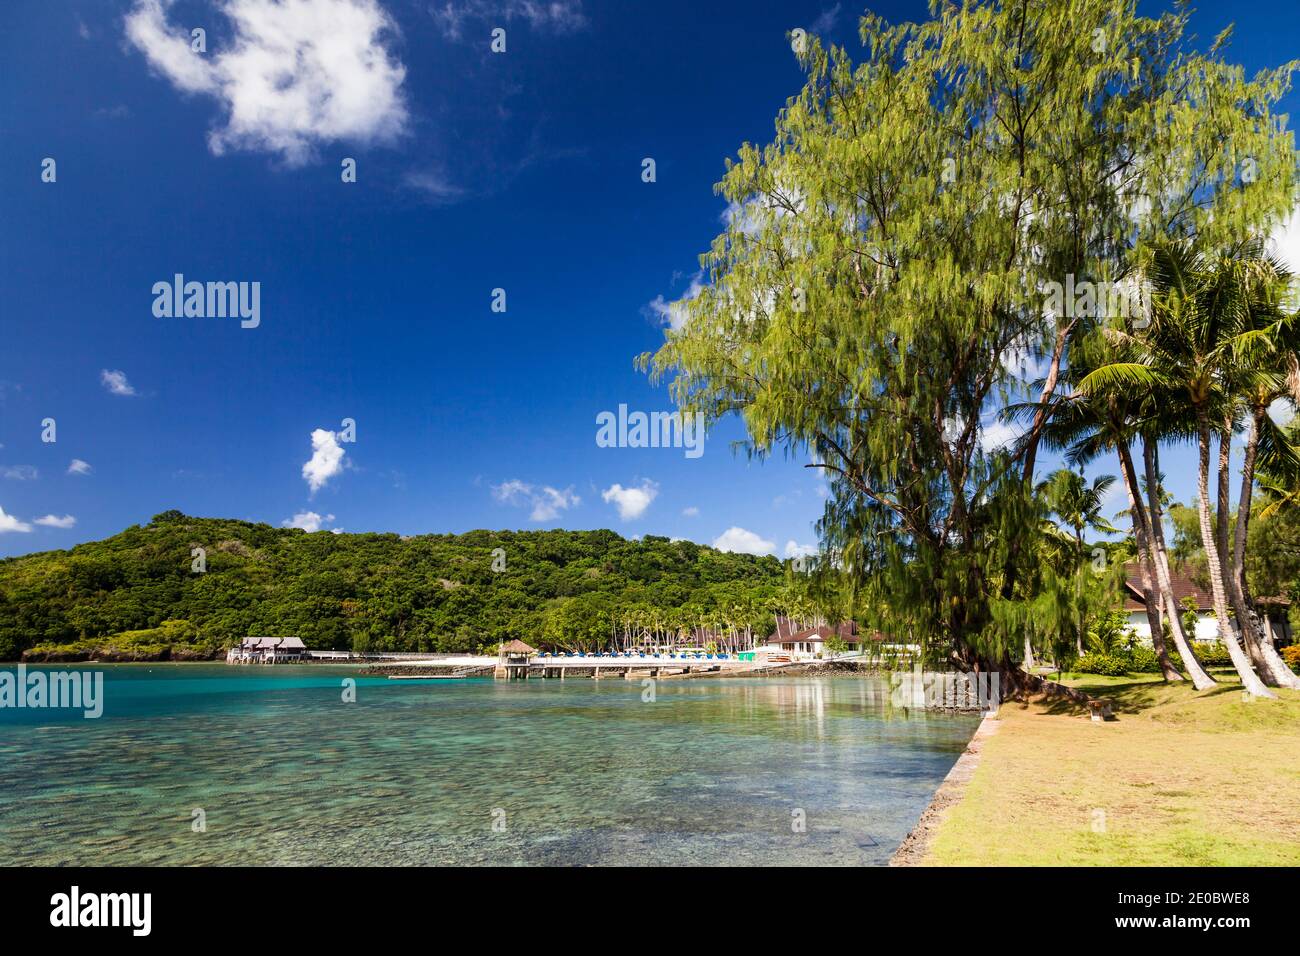 Blick auf Lagune und weißen Sandstrand, Palau Pacific Resort, Insel Ngerekebesang, auch Arakabesan Insel, Koror, Palau, Mikronesien, Ozeanien Stockfoto